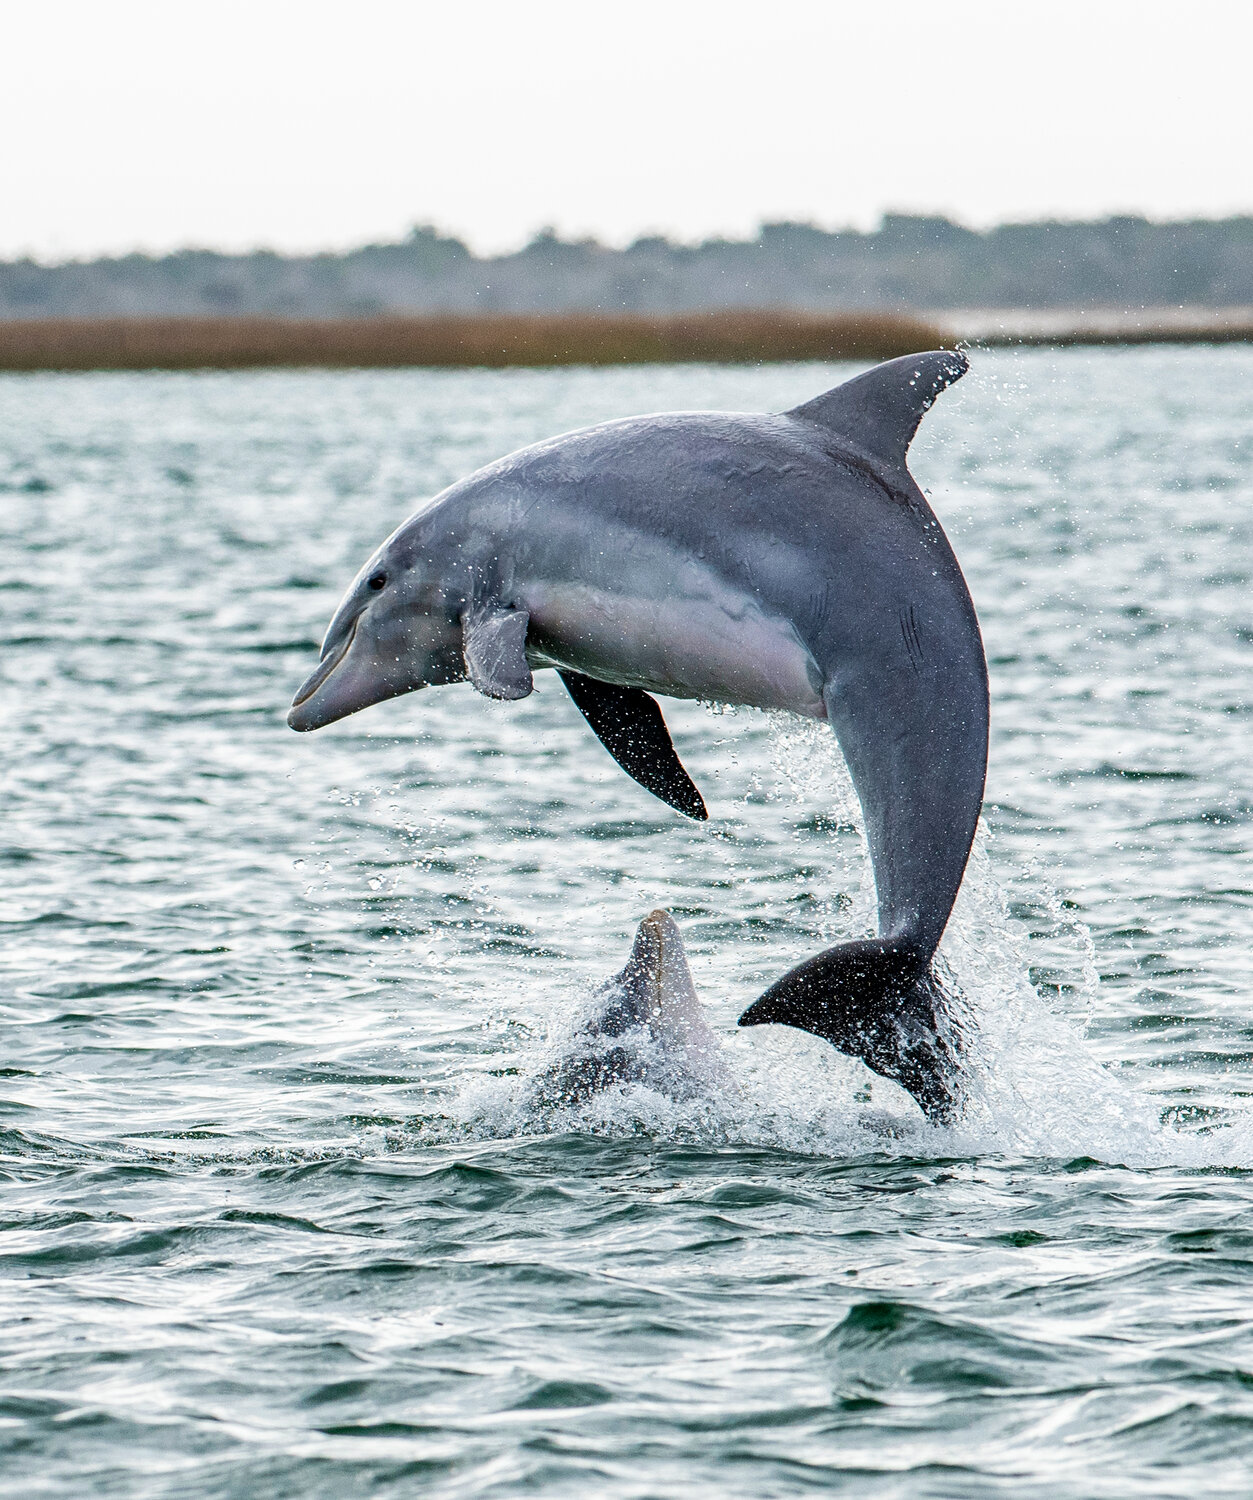 Dolphins play near Rachel Carson Reserve.